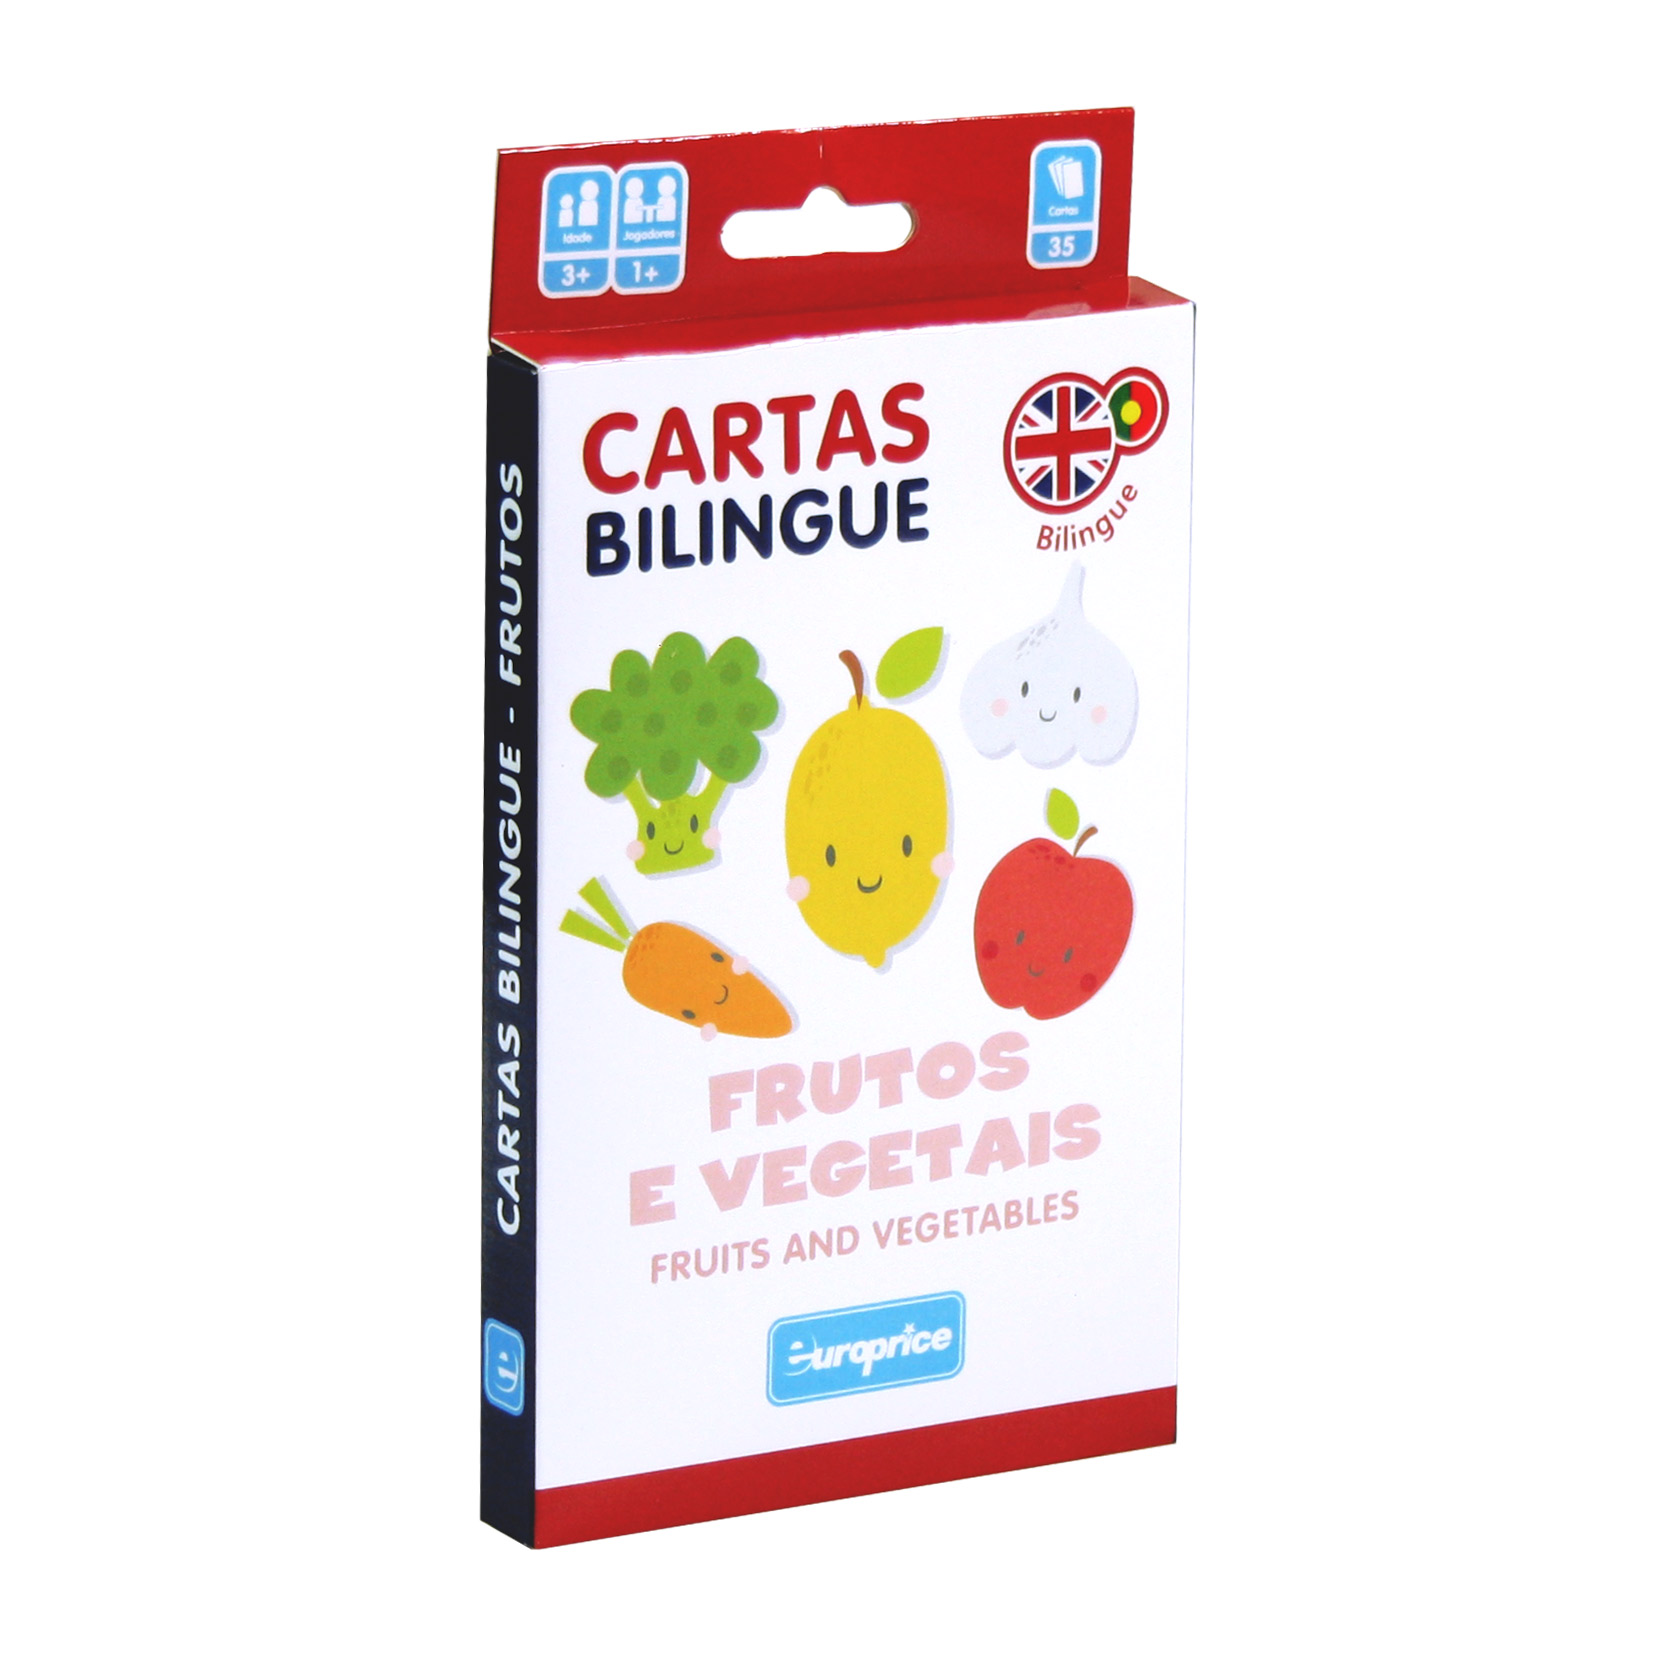 Caixa do jogo Cartas Bilingue - Frutos e Vegetais. É uma caixa de cartas vertical, em tons de branco, vermelho e azul escuro, com ilustrações de frutos e vegetais a sorrir.